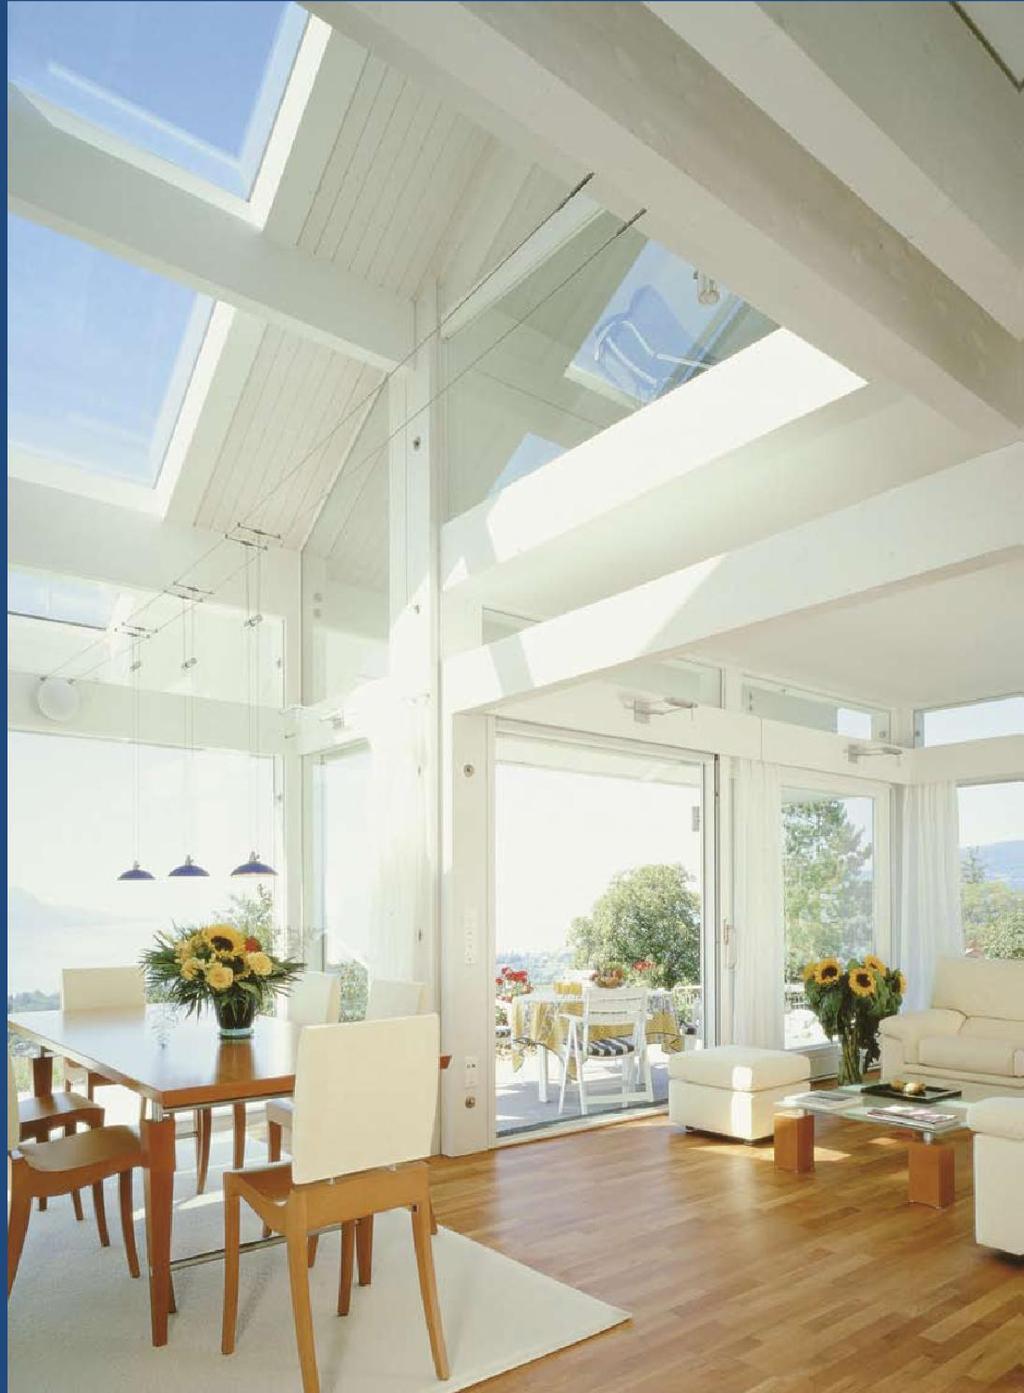 Window glazing Advantages indoor-outdoor interaction healthy